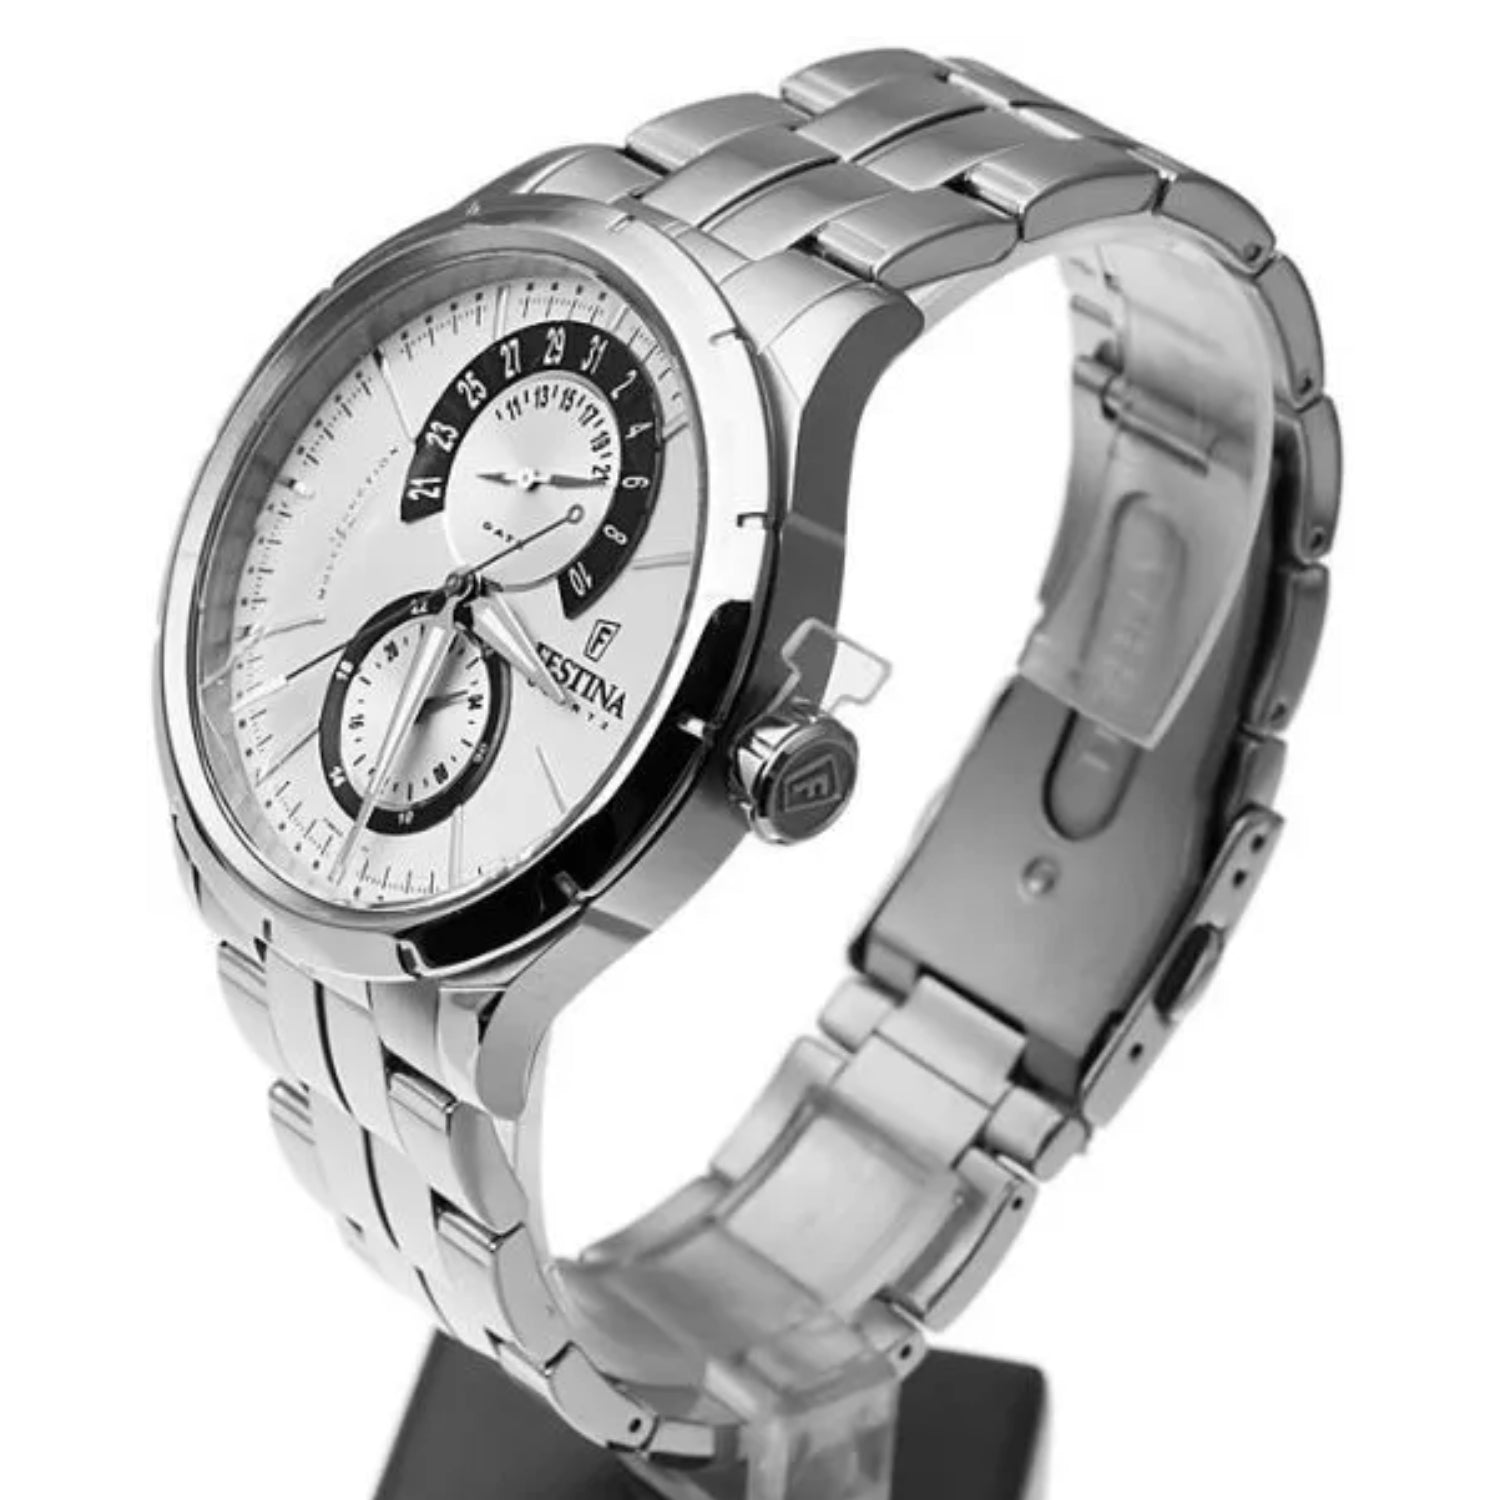 Festina Men's White Dial Quartz Watch - F16632/5